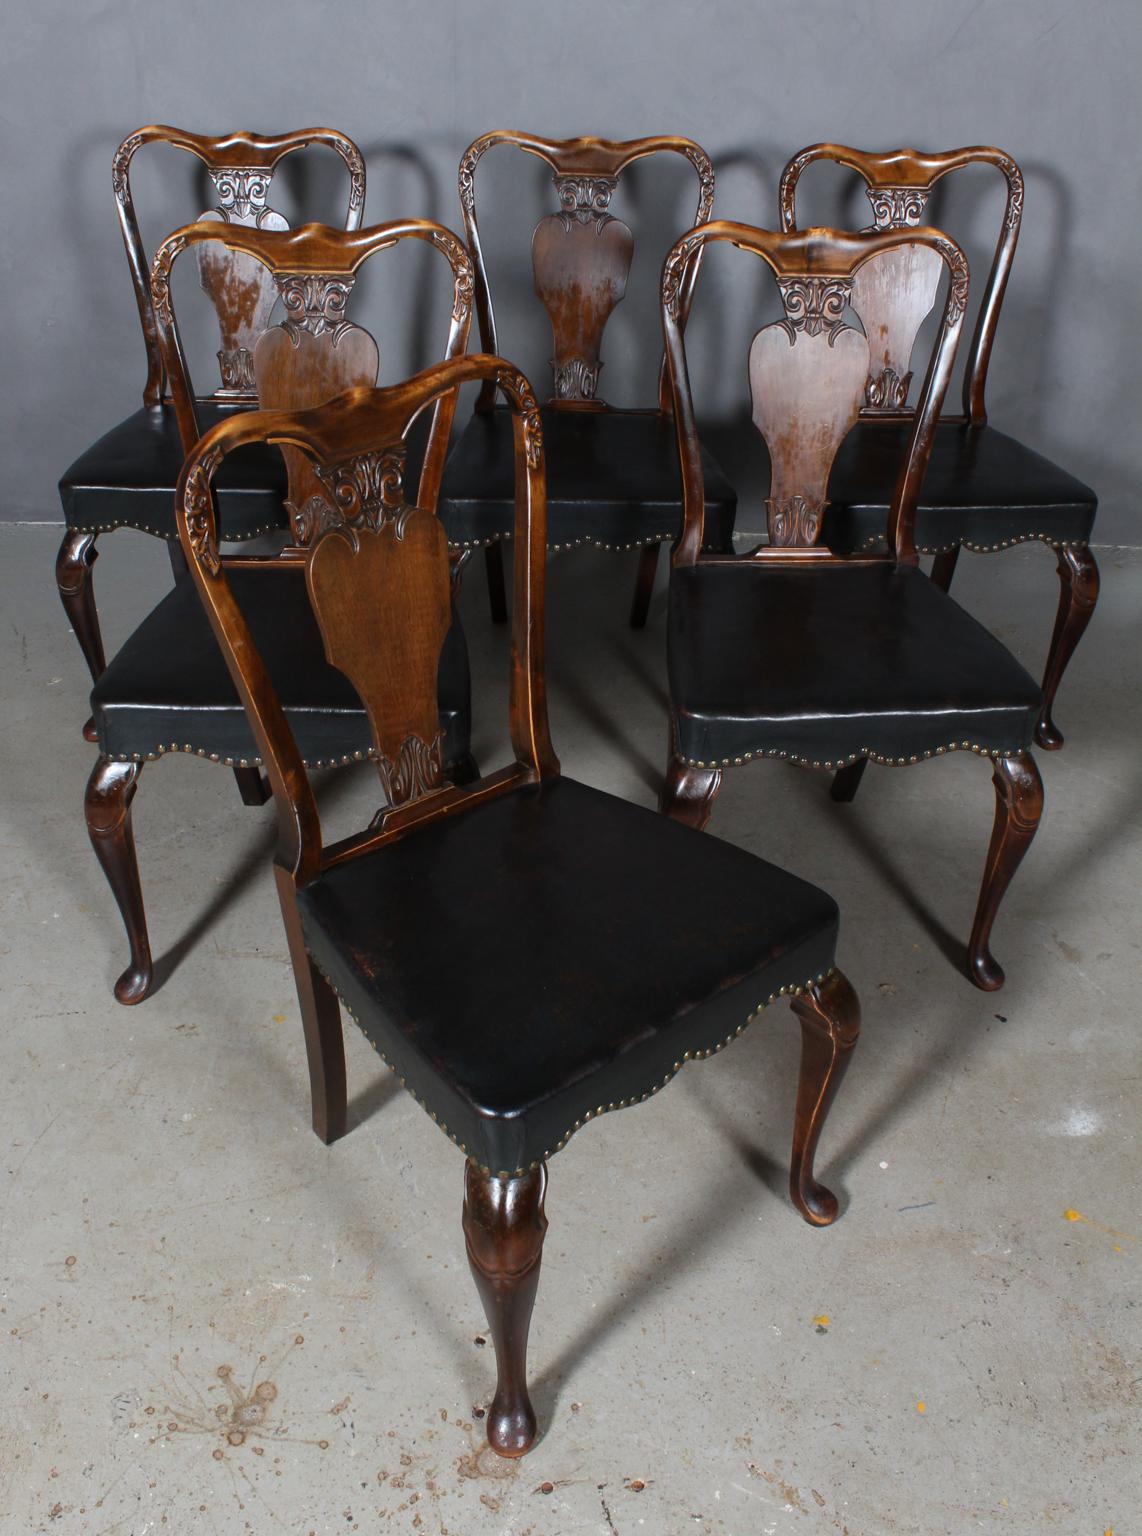 Satz von sechs Rokokostühlen aus gebeizter Buche.

Original gepolstert mit schwarz patiniertem Leder mit Nägeln.

Hergestellt zu Beginn des 20. Jahrhunderts.